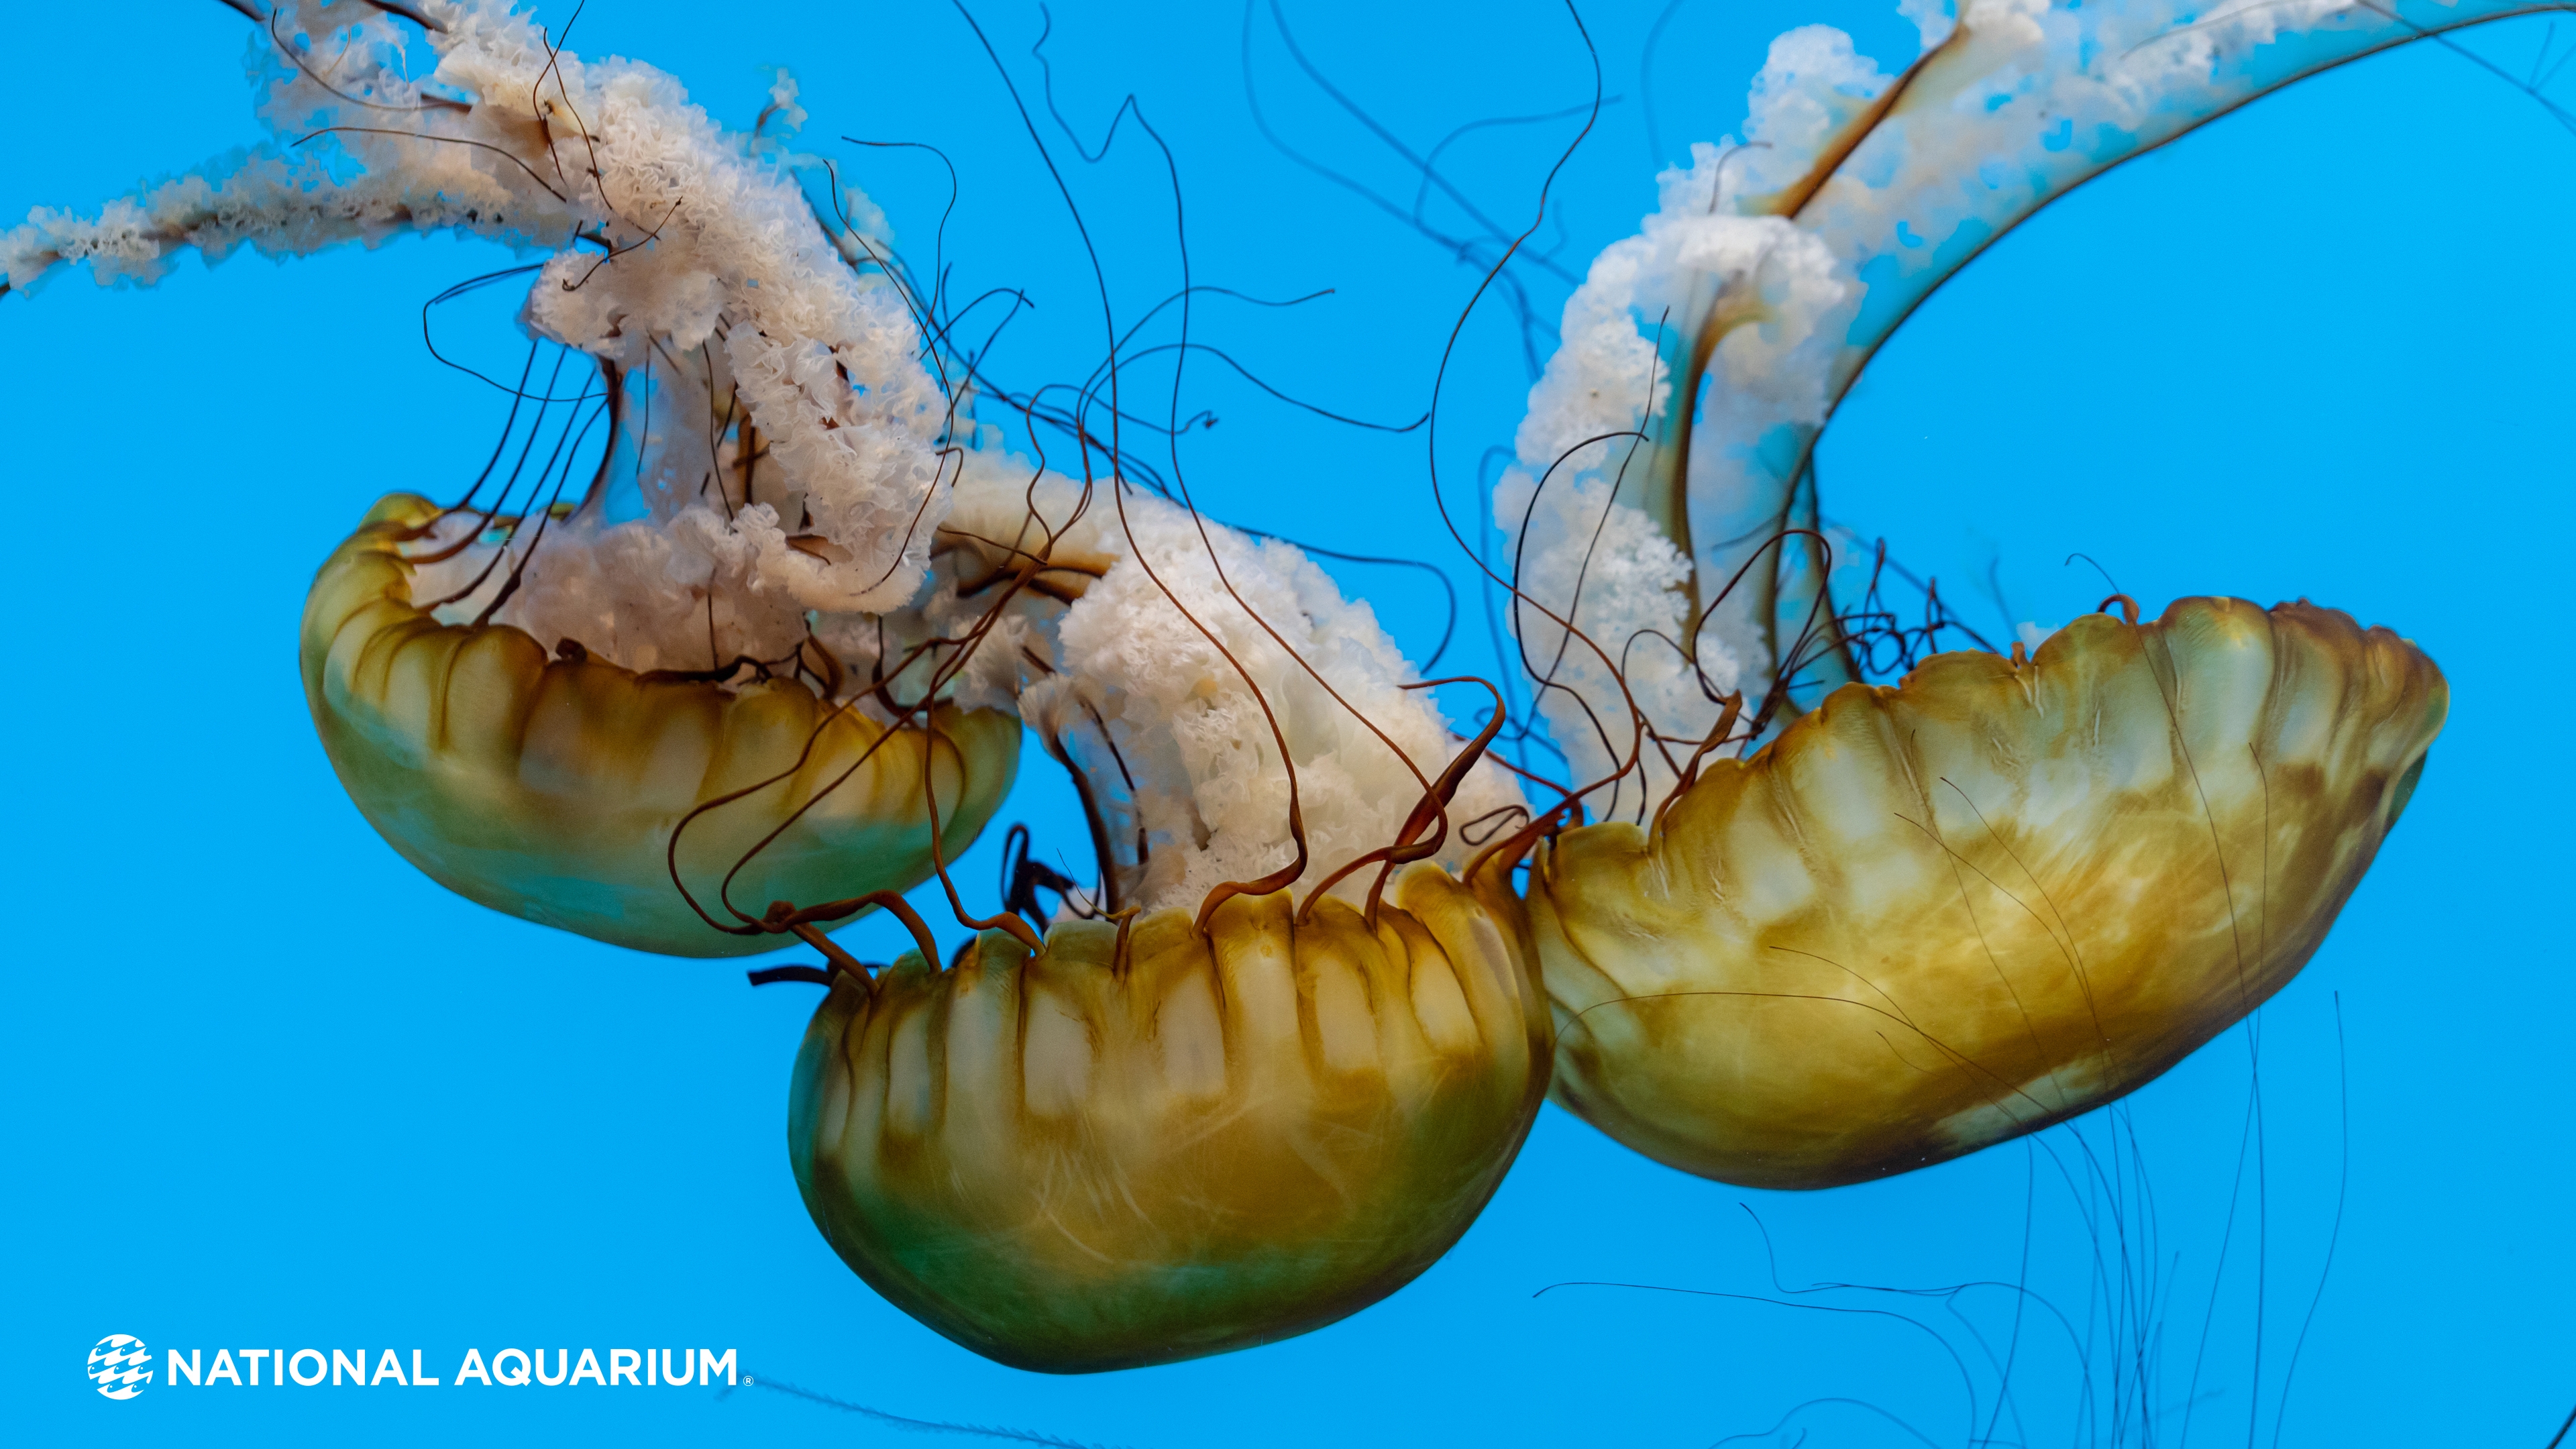 National Aquarium - Wallpaper Wednesdays: Jellies Are Our Jam